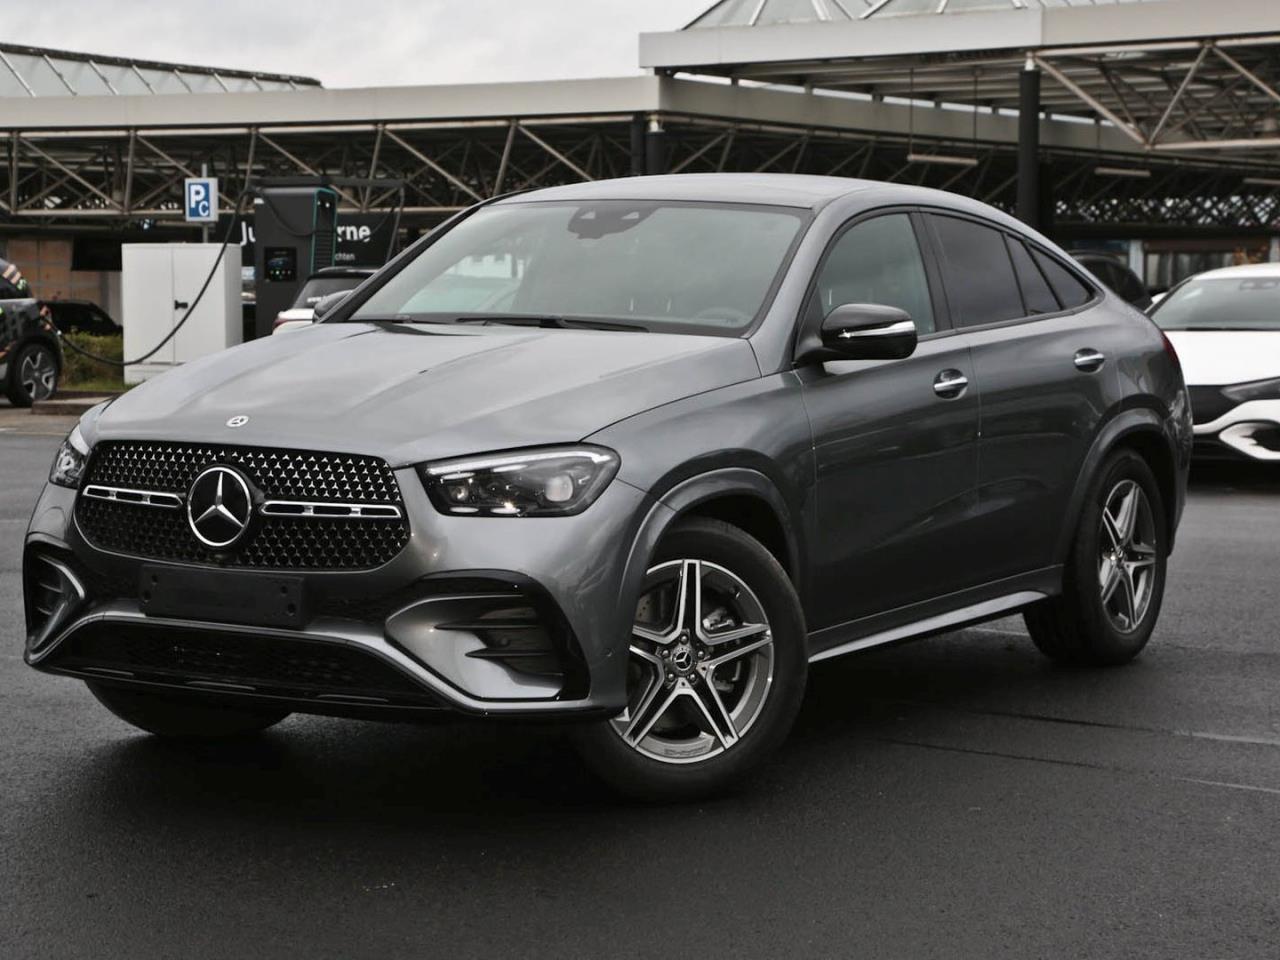 Kunzmann-Paket für den GLK: Mercedes Tuning: Neues Aerodynamik